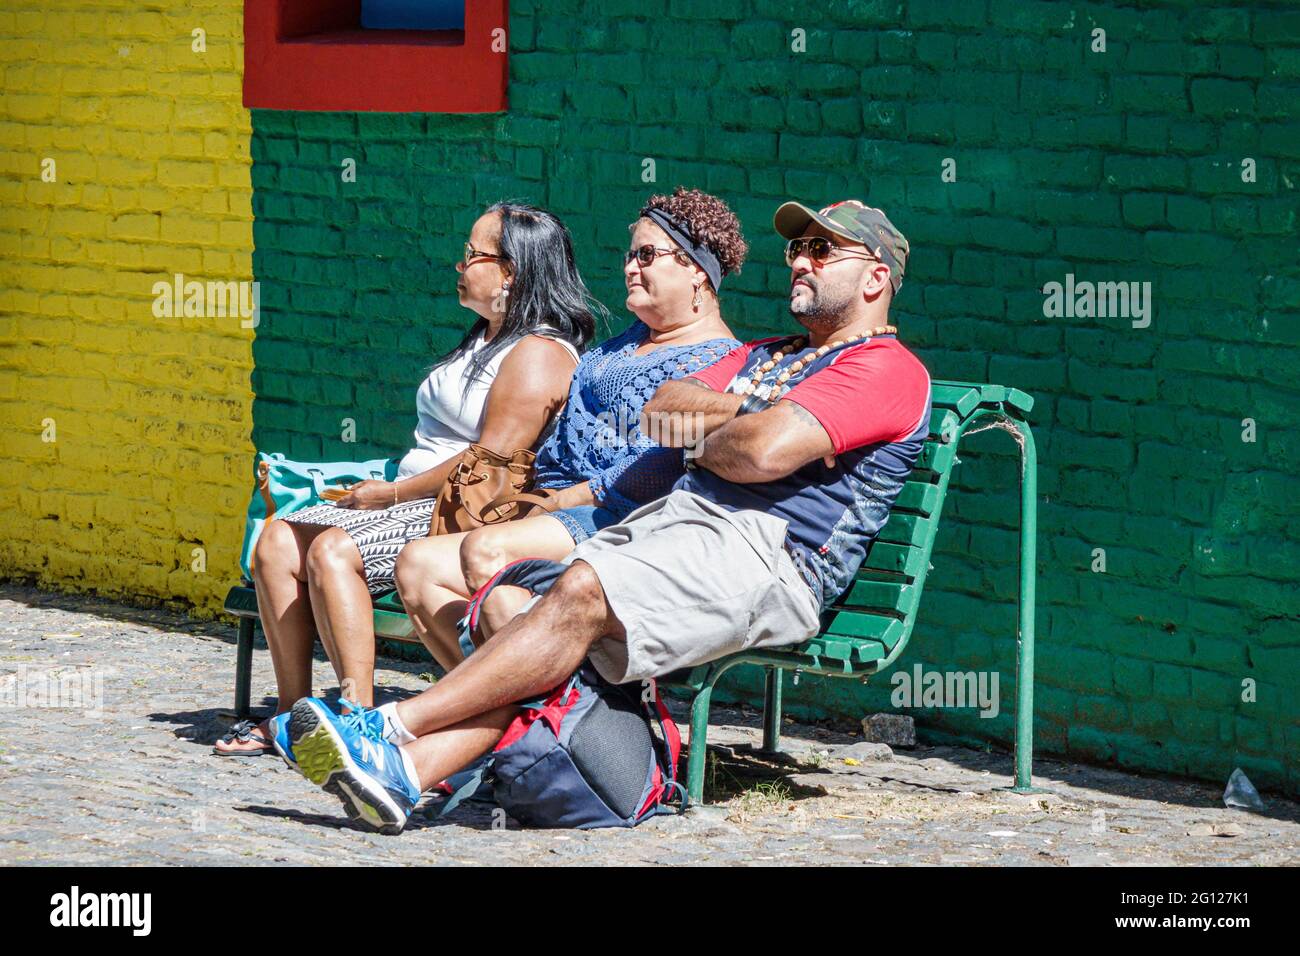 Argentina Buenos Aires Caminito Barrio de la Boca icónico barrio histórico cultural hispano hombre mujer sentado banco de descanso Foto de stock